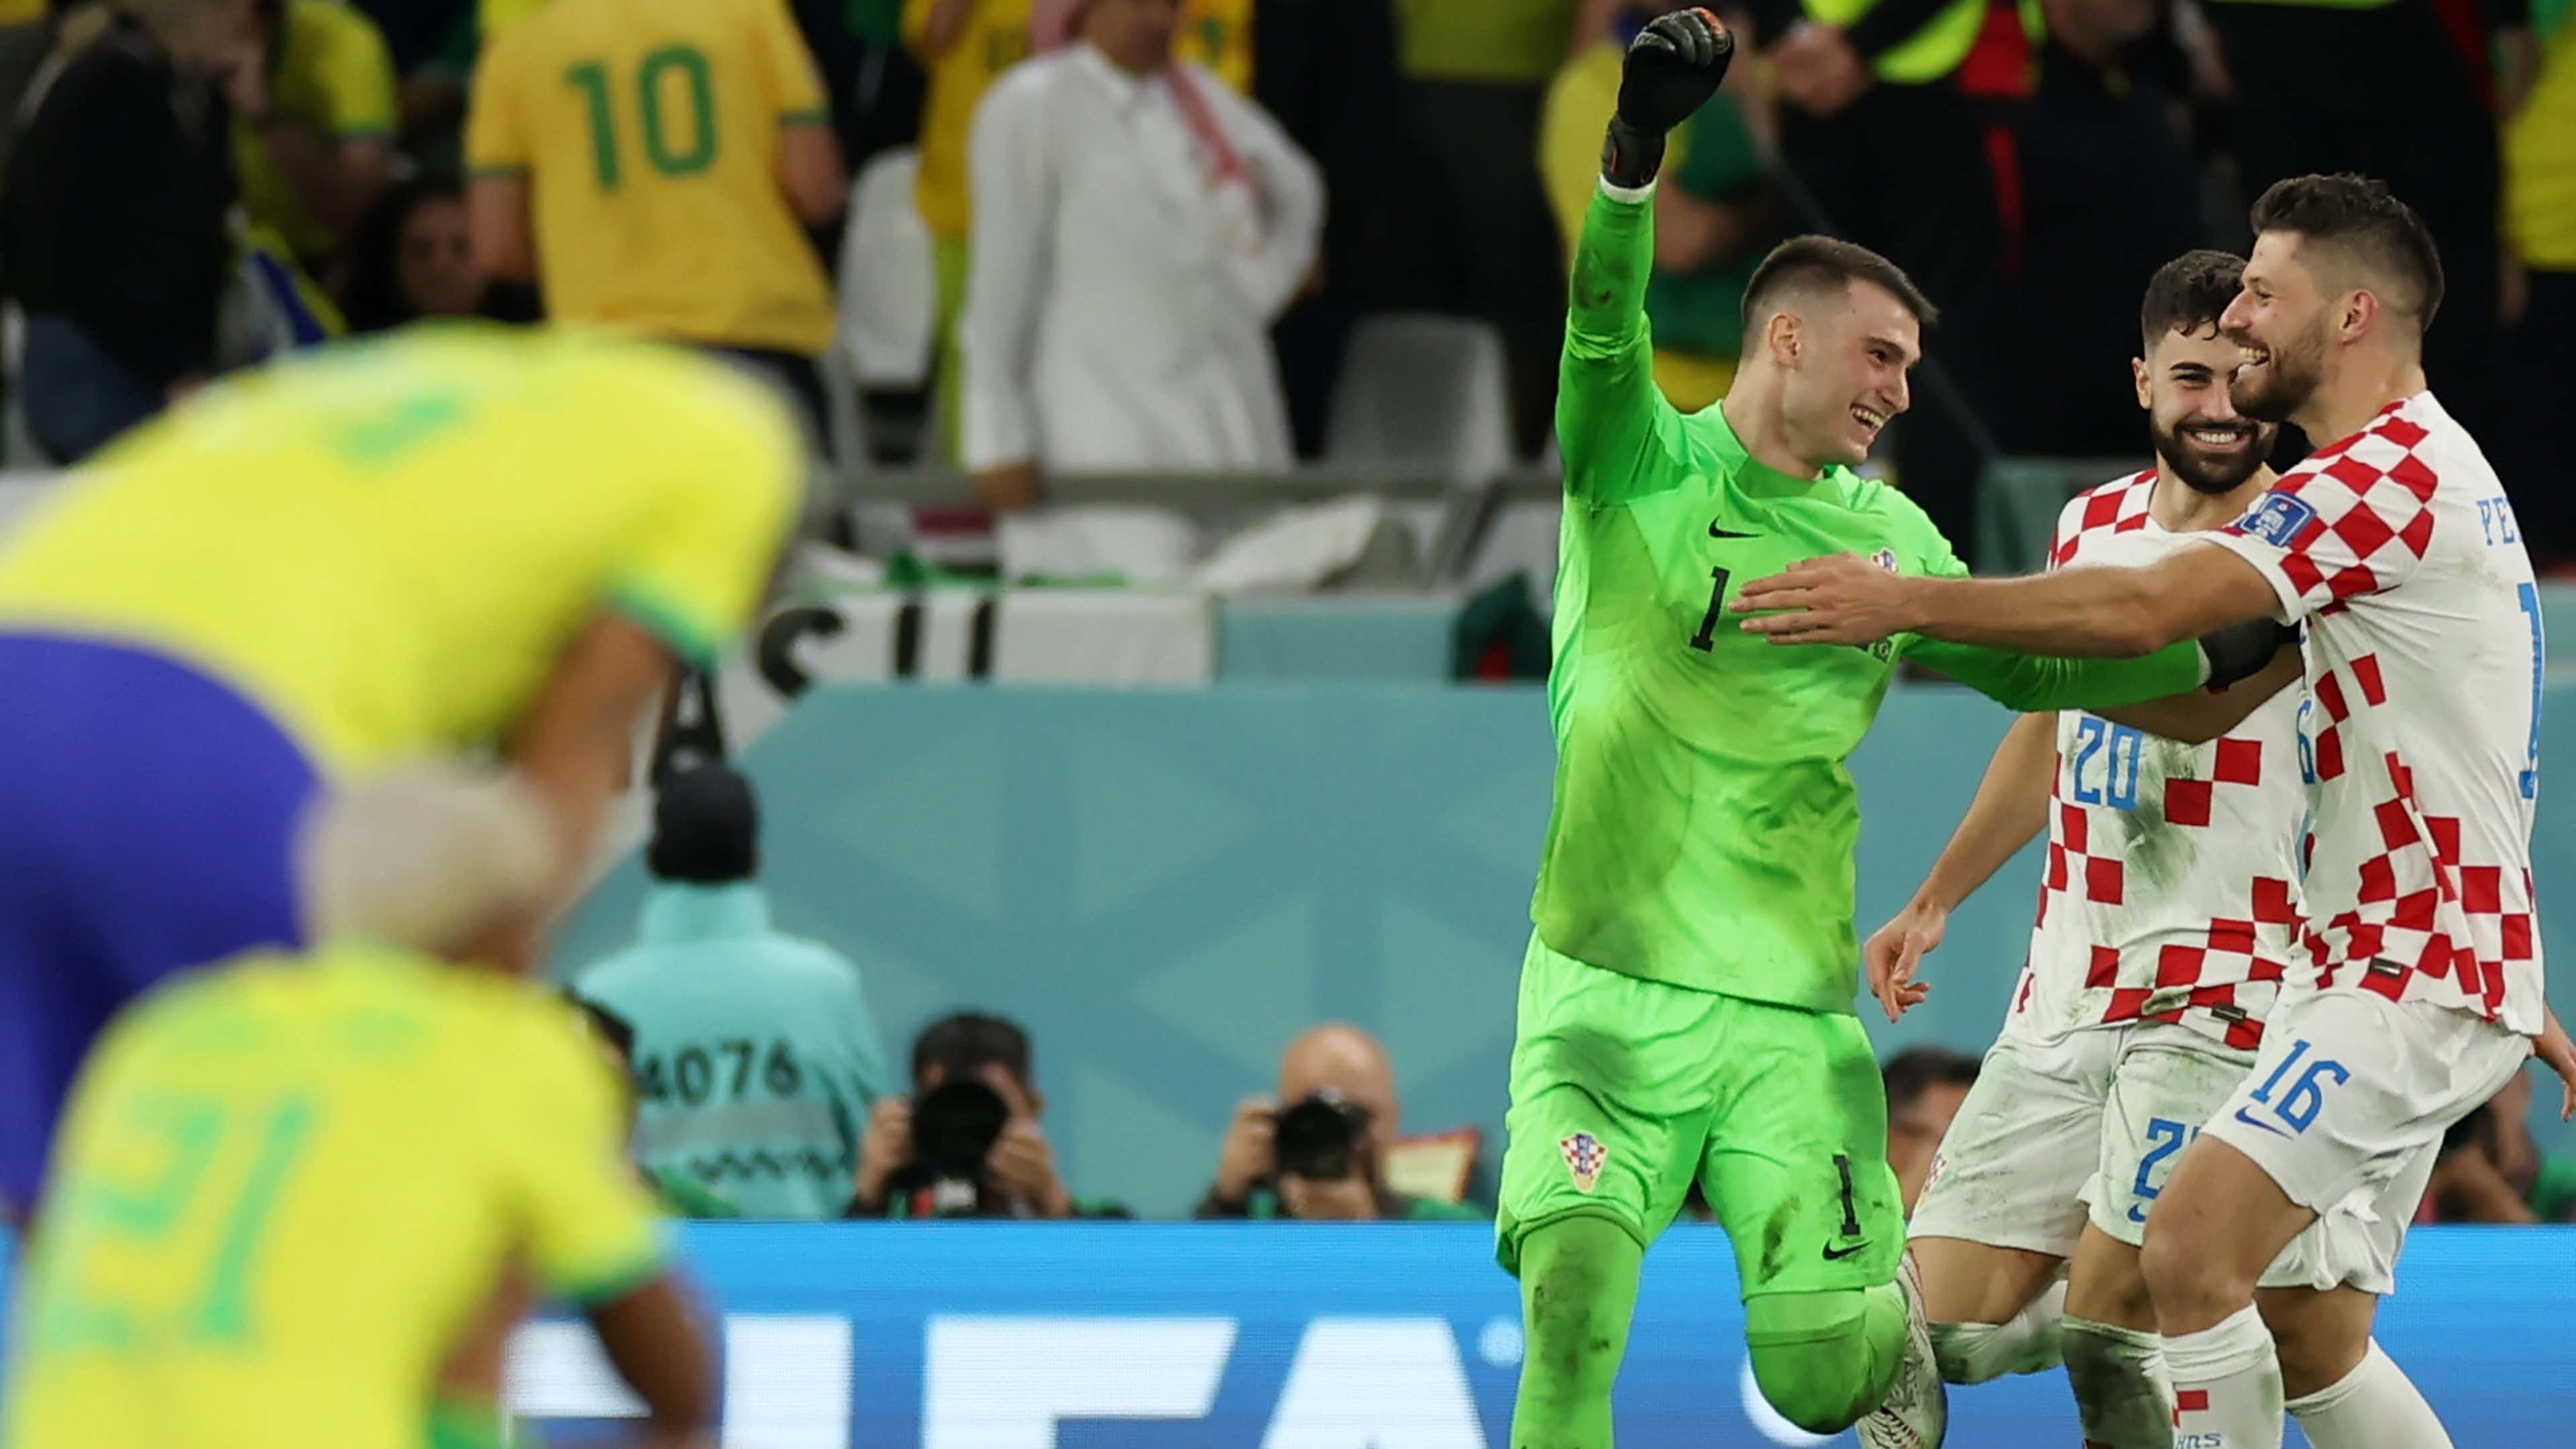 ESPORTES: Brasil e Croácia jogam às 12h por uma vaga na semifinal da Copa.  - RRMAIS - Informação com Credibilidade